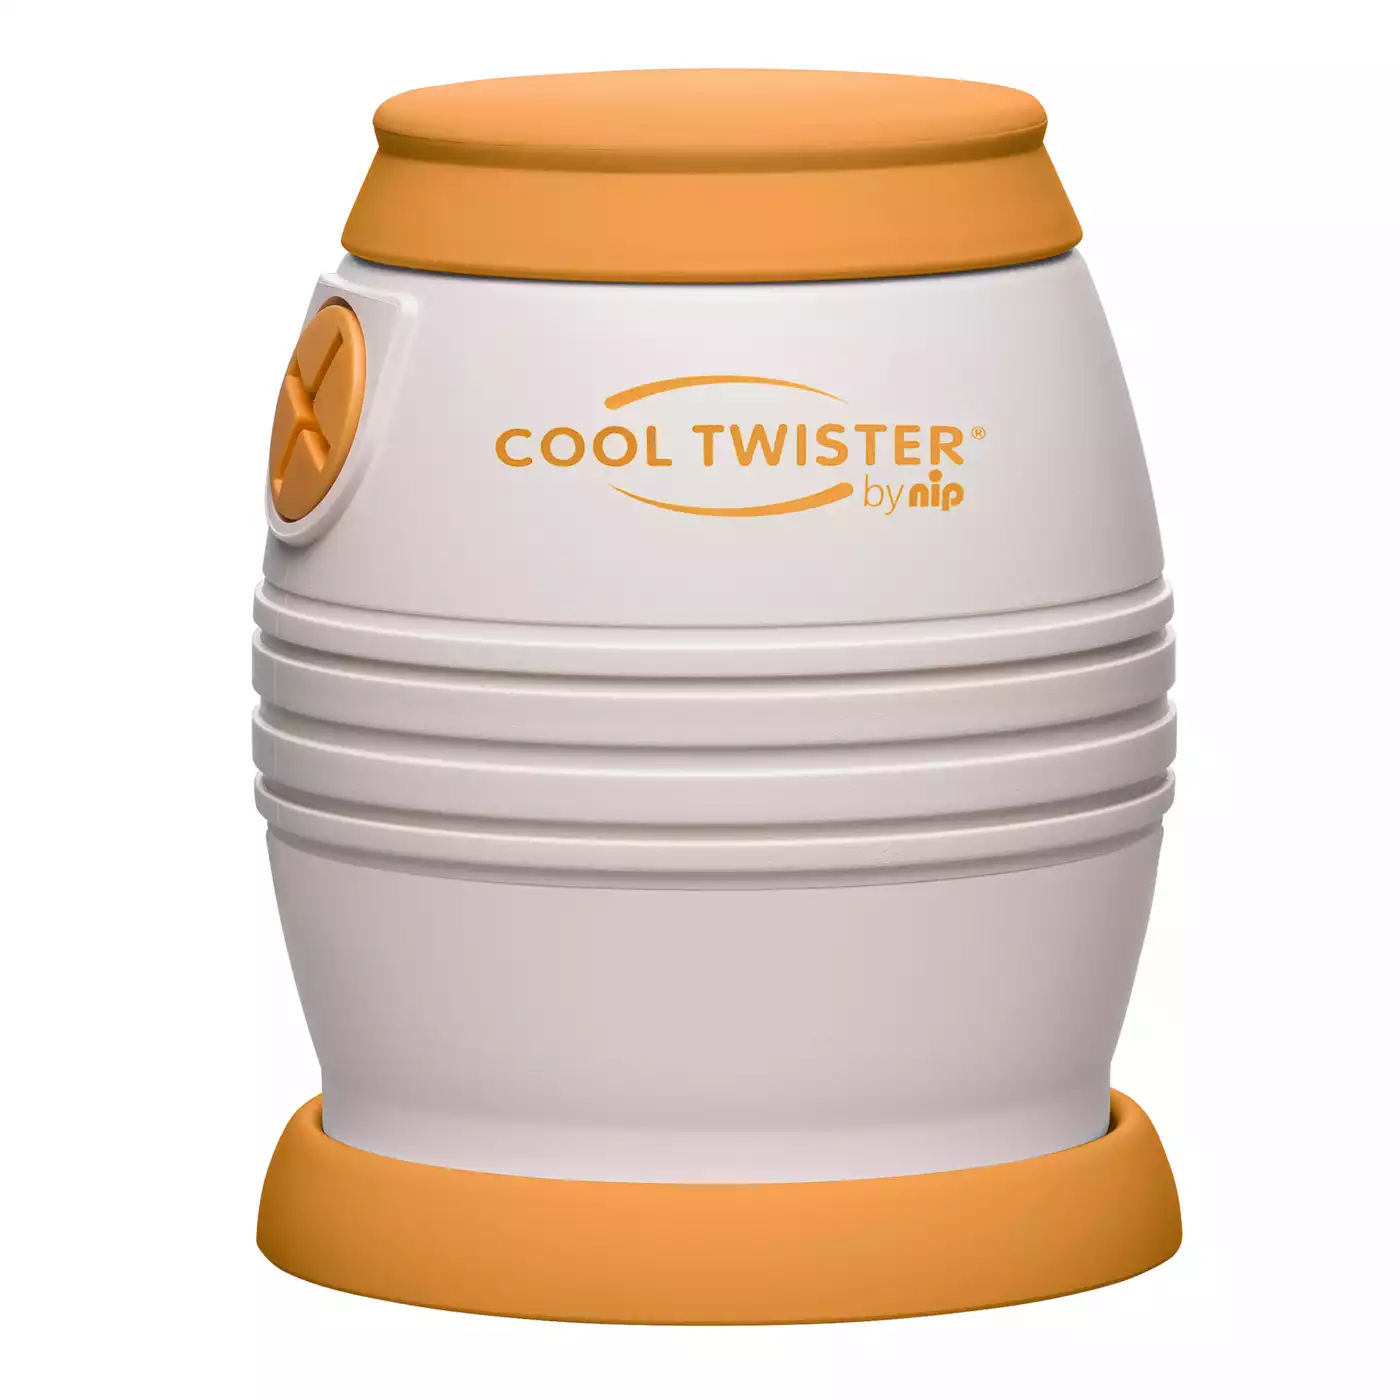 Fläschchenwasser-Abkühler Cool Twister nip 2000573056303 1